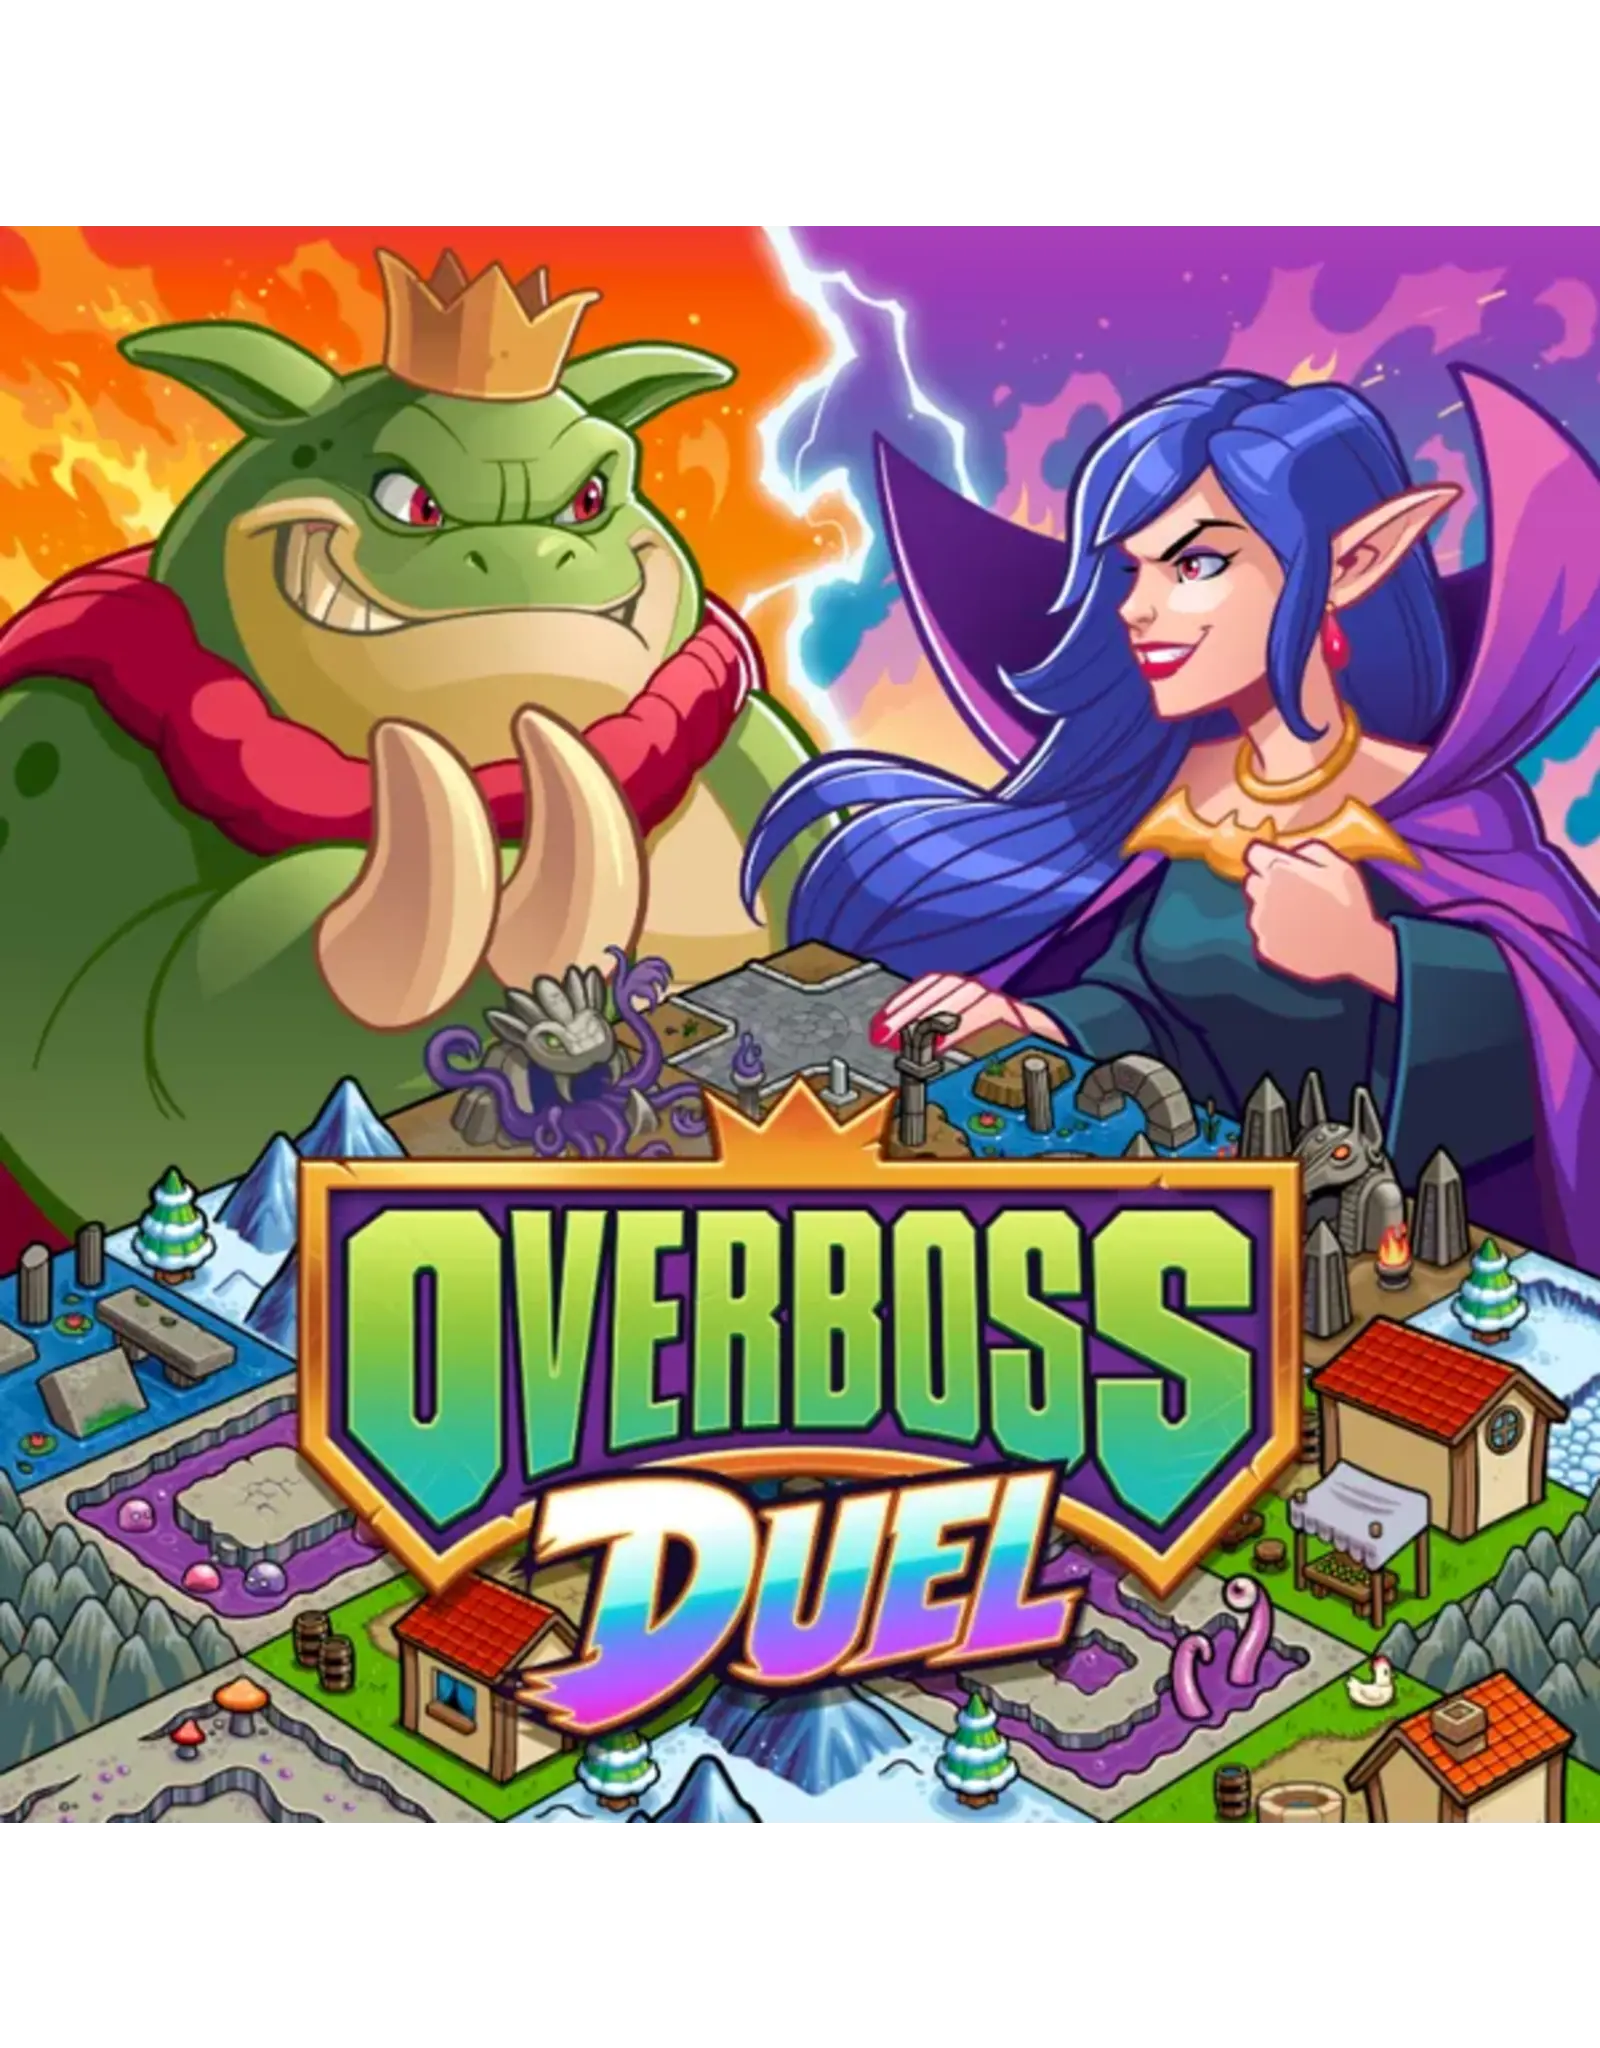 Overboss Duel